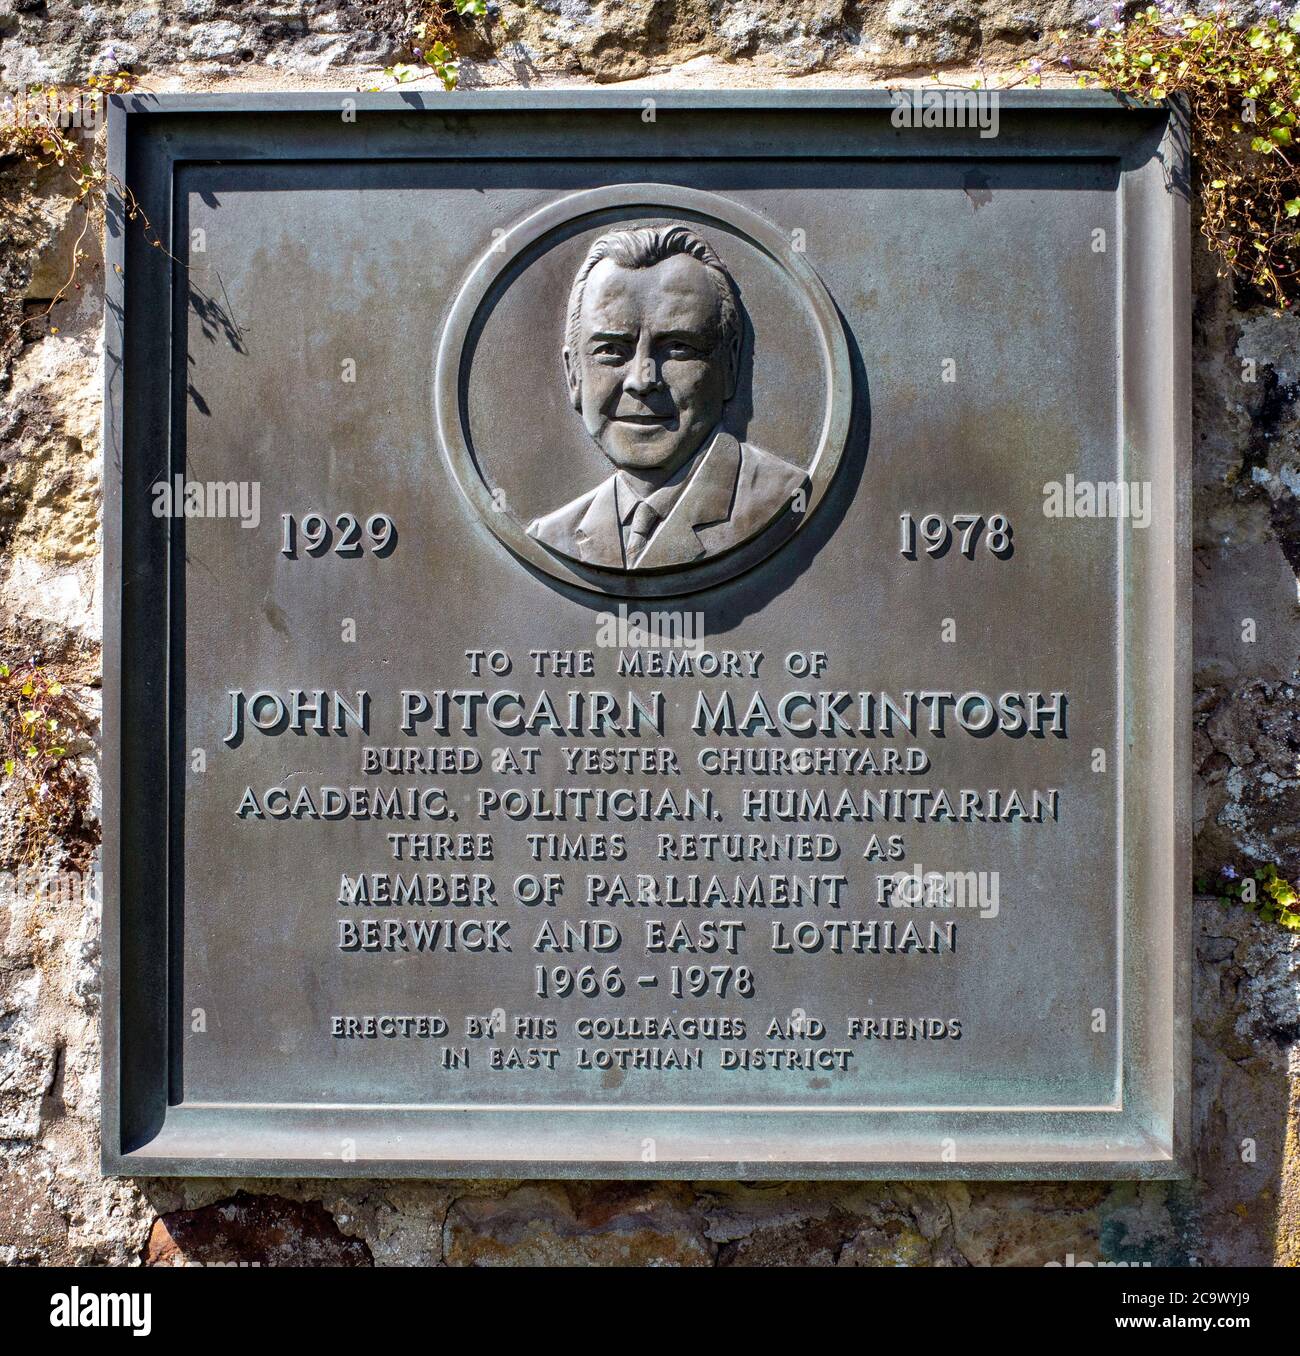 Plaque commémorant, politicien travailliste, John Pitcairn Mackintosh, Gifford, East Lothian, Écosse, Royaume-Uni Banque D'Images